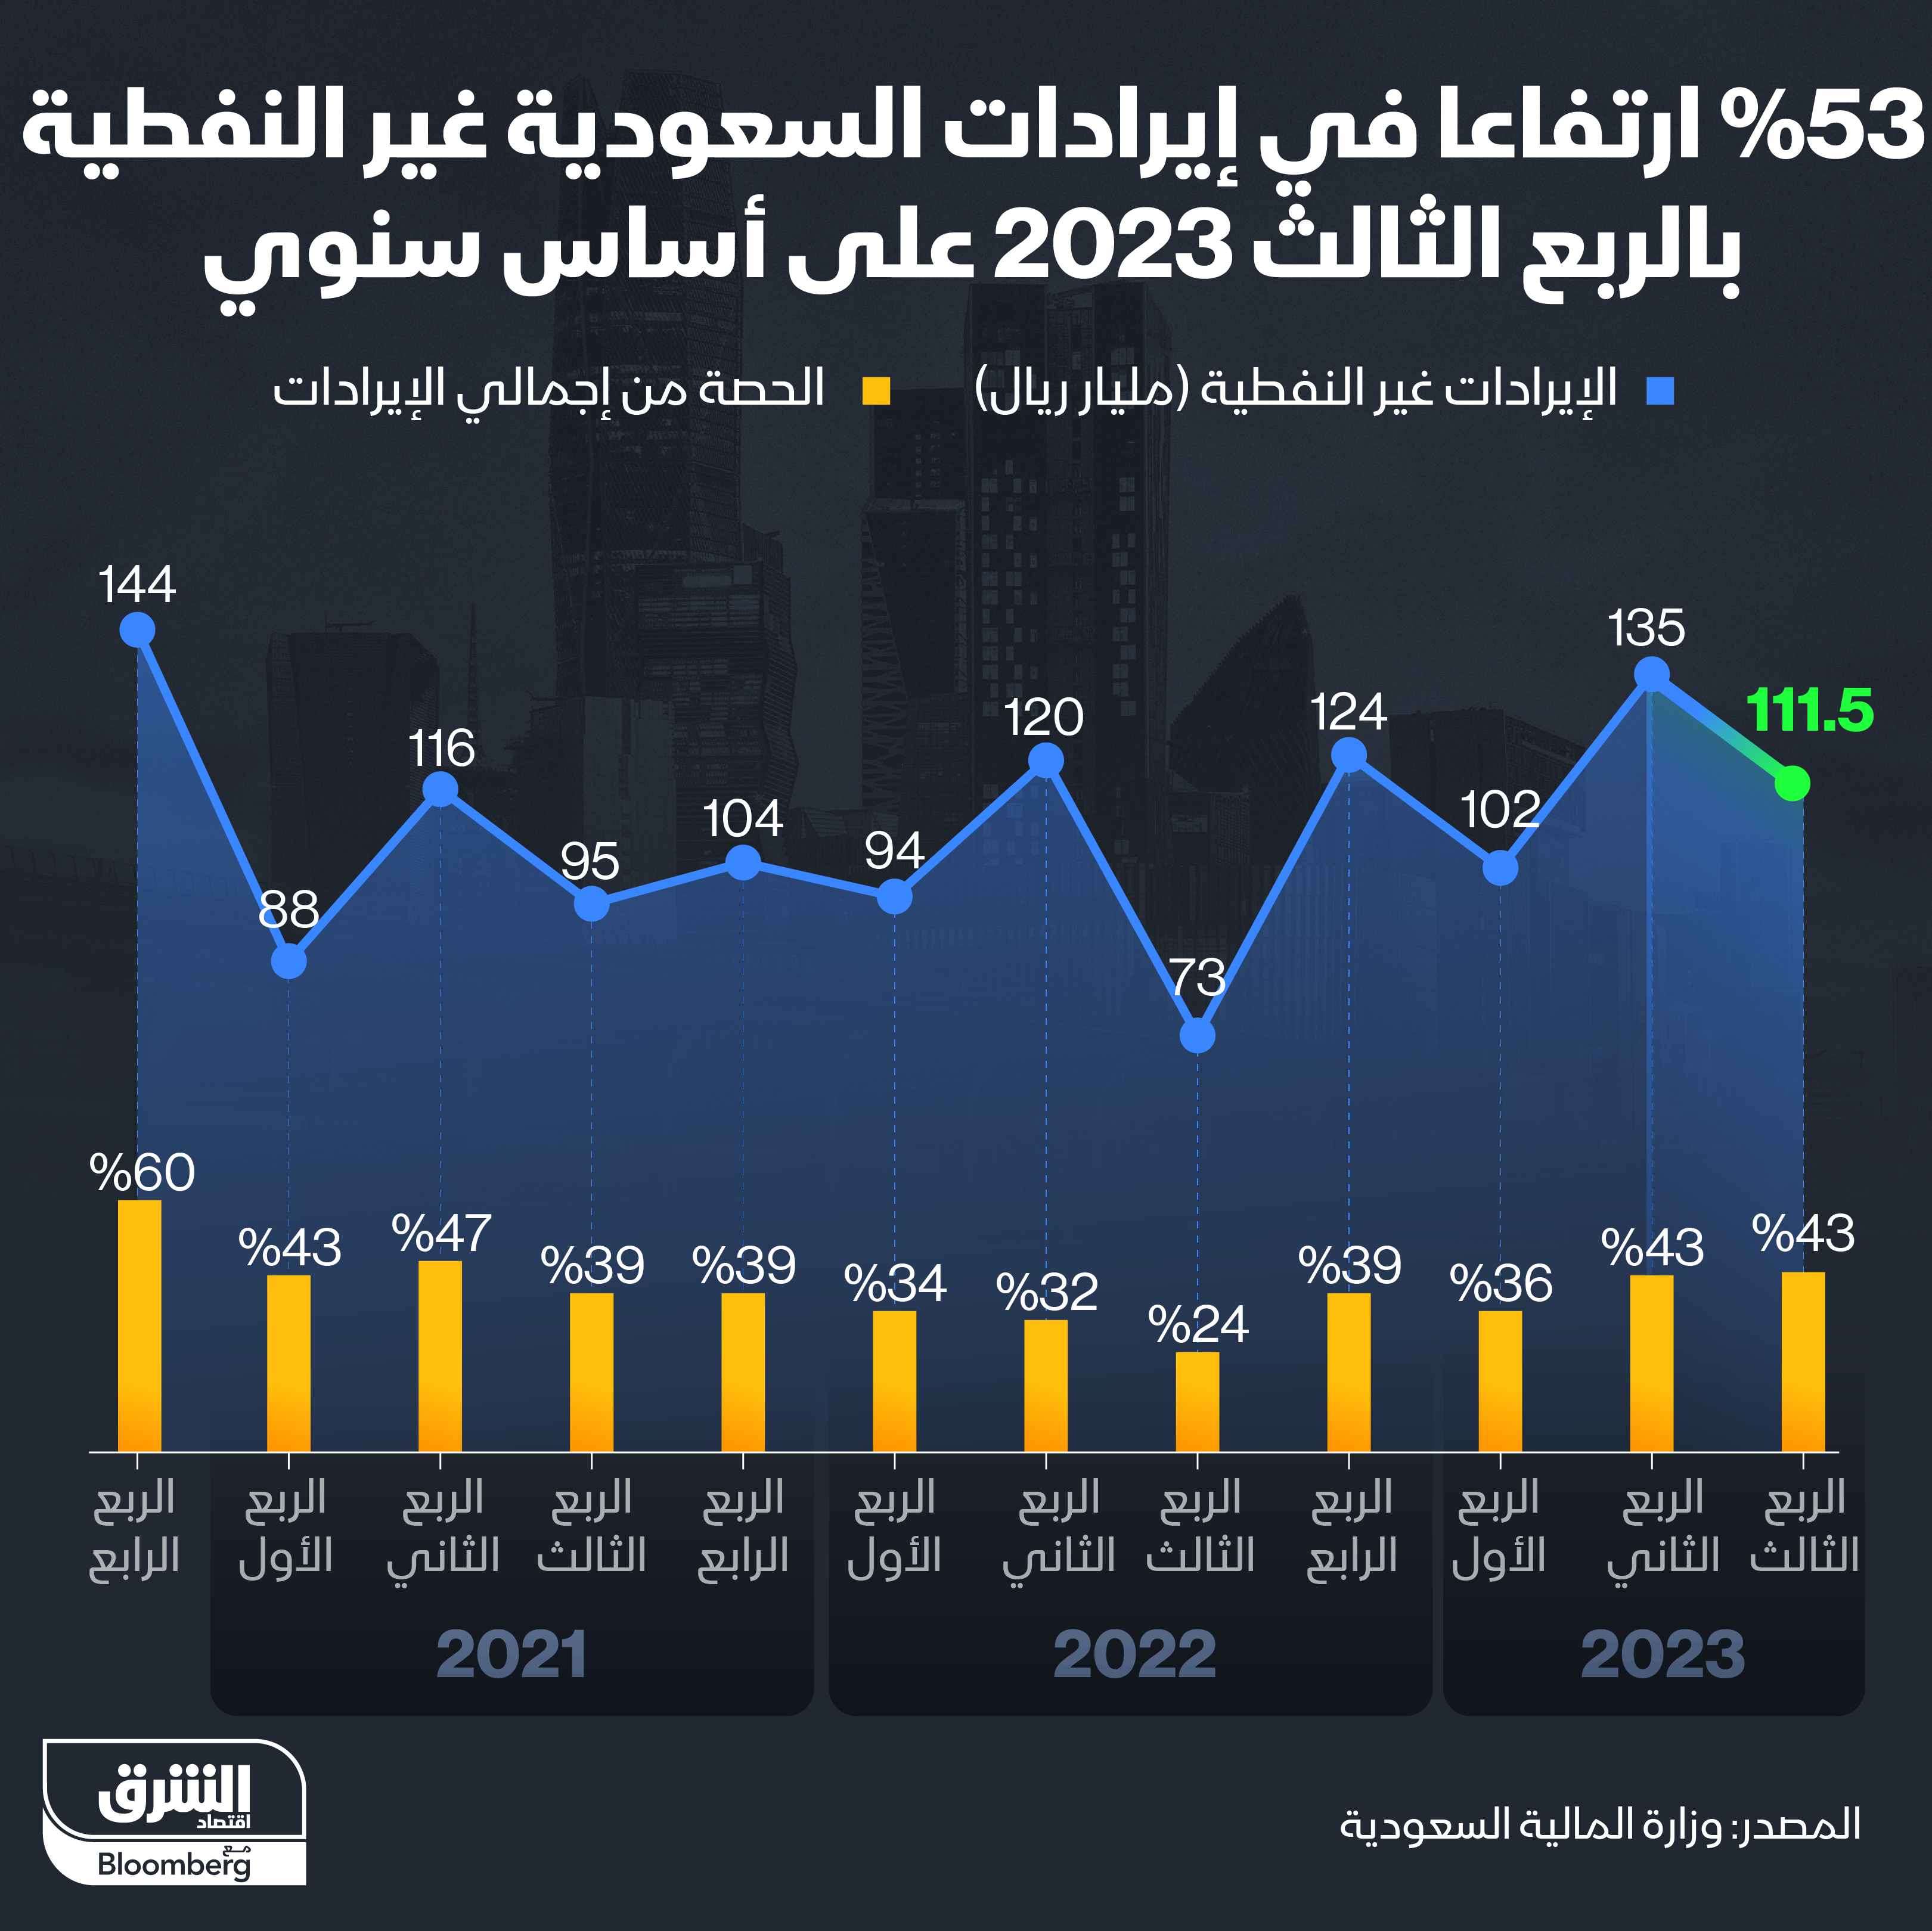 ارتفاع الإيرادات غير النفطية في السعودية 53% إلى 111.5 مليار ريال